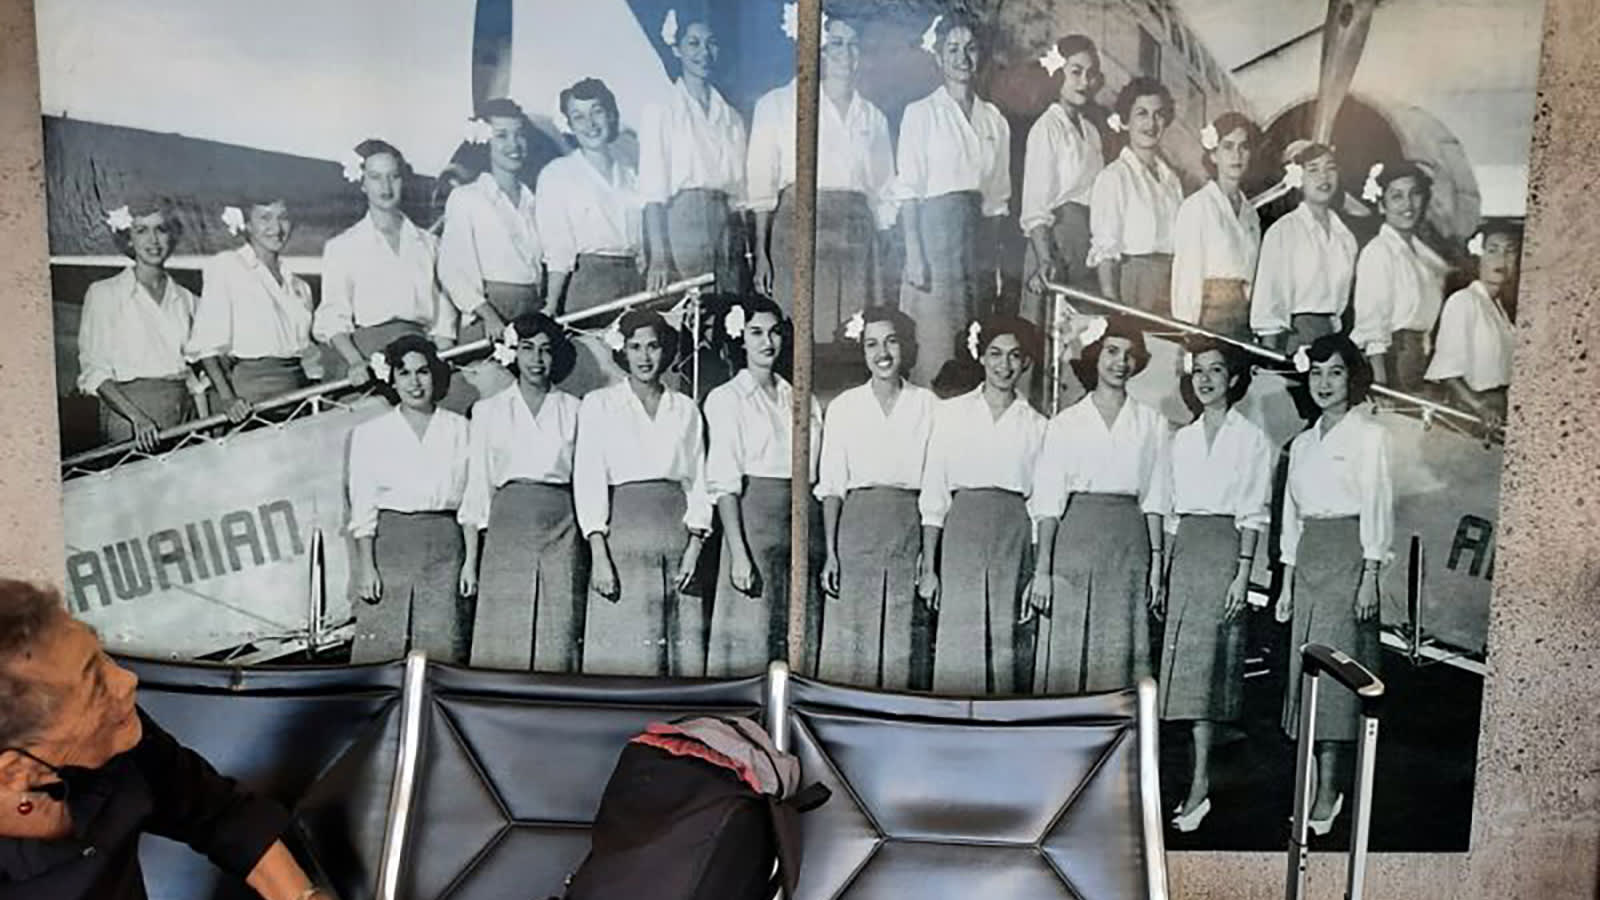 So geschah es, als eine 94-jährige ehemalige Flugbegleiterin am Flughafen ein Bild von sich sah 